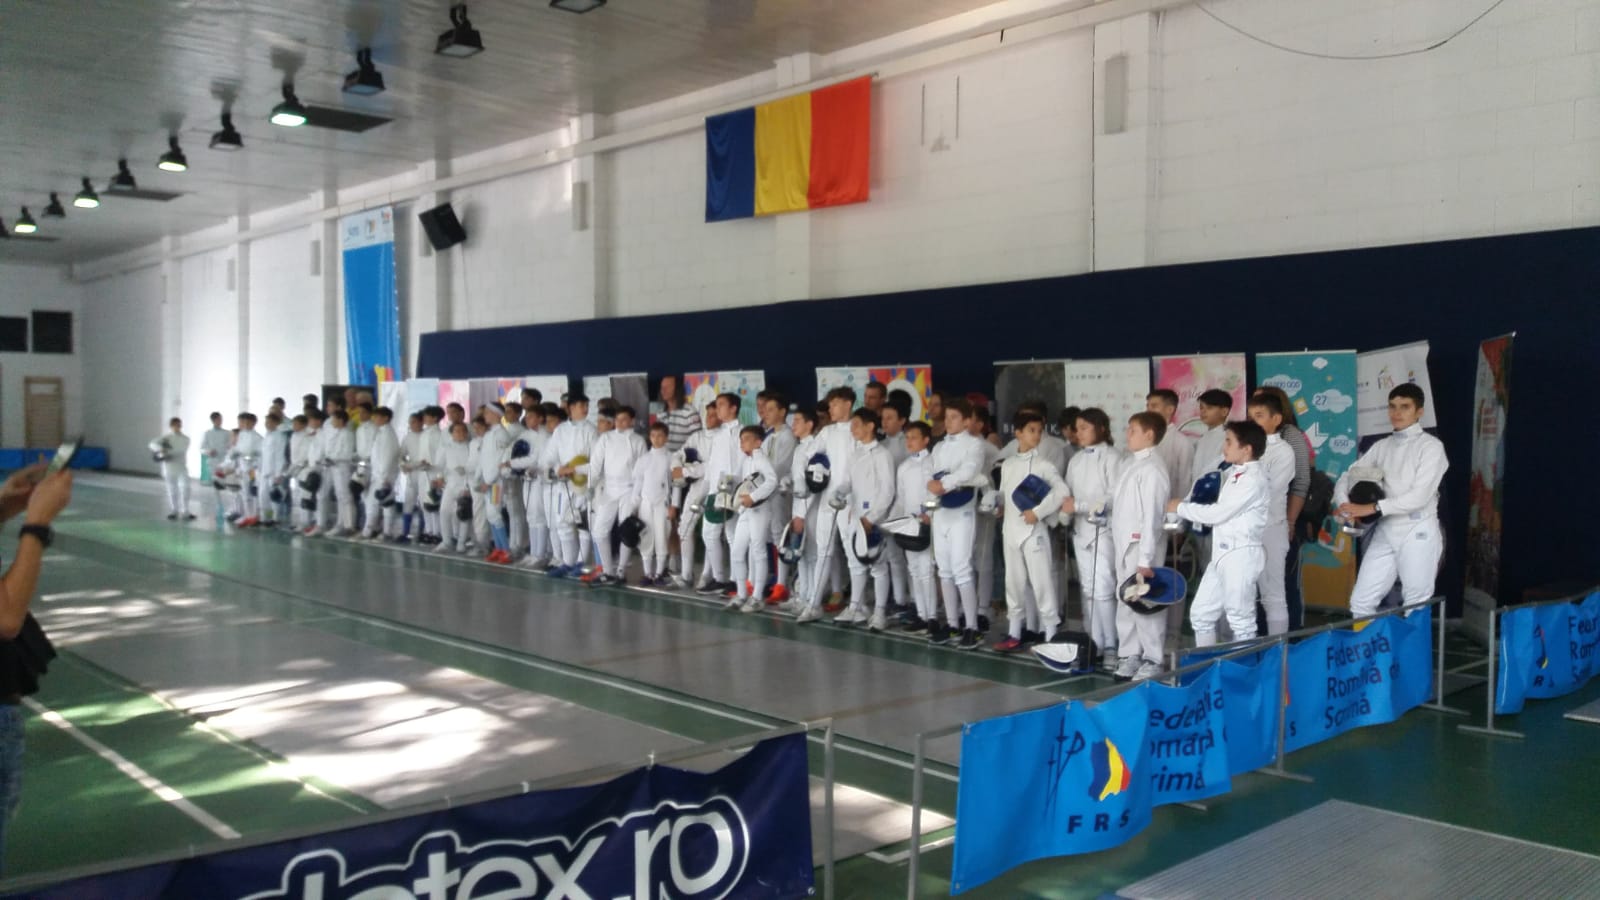 LIVE: Campionatul Național de scrimă pentru copii de la București, ediția 2018, ziua 1: azi au loc probele de spadă masculin la 12-13 ani și 10-11 ani